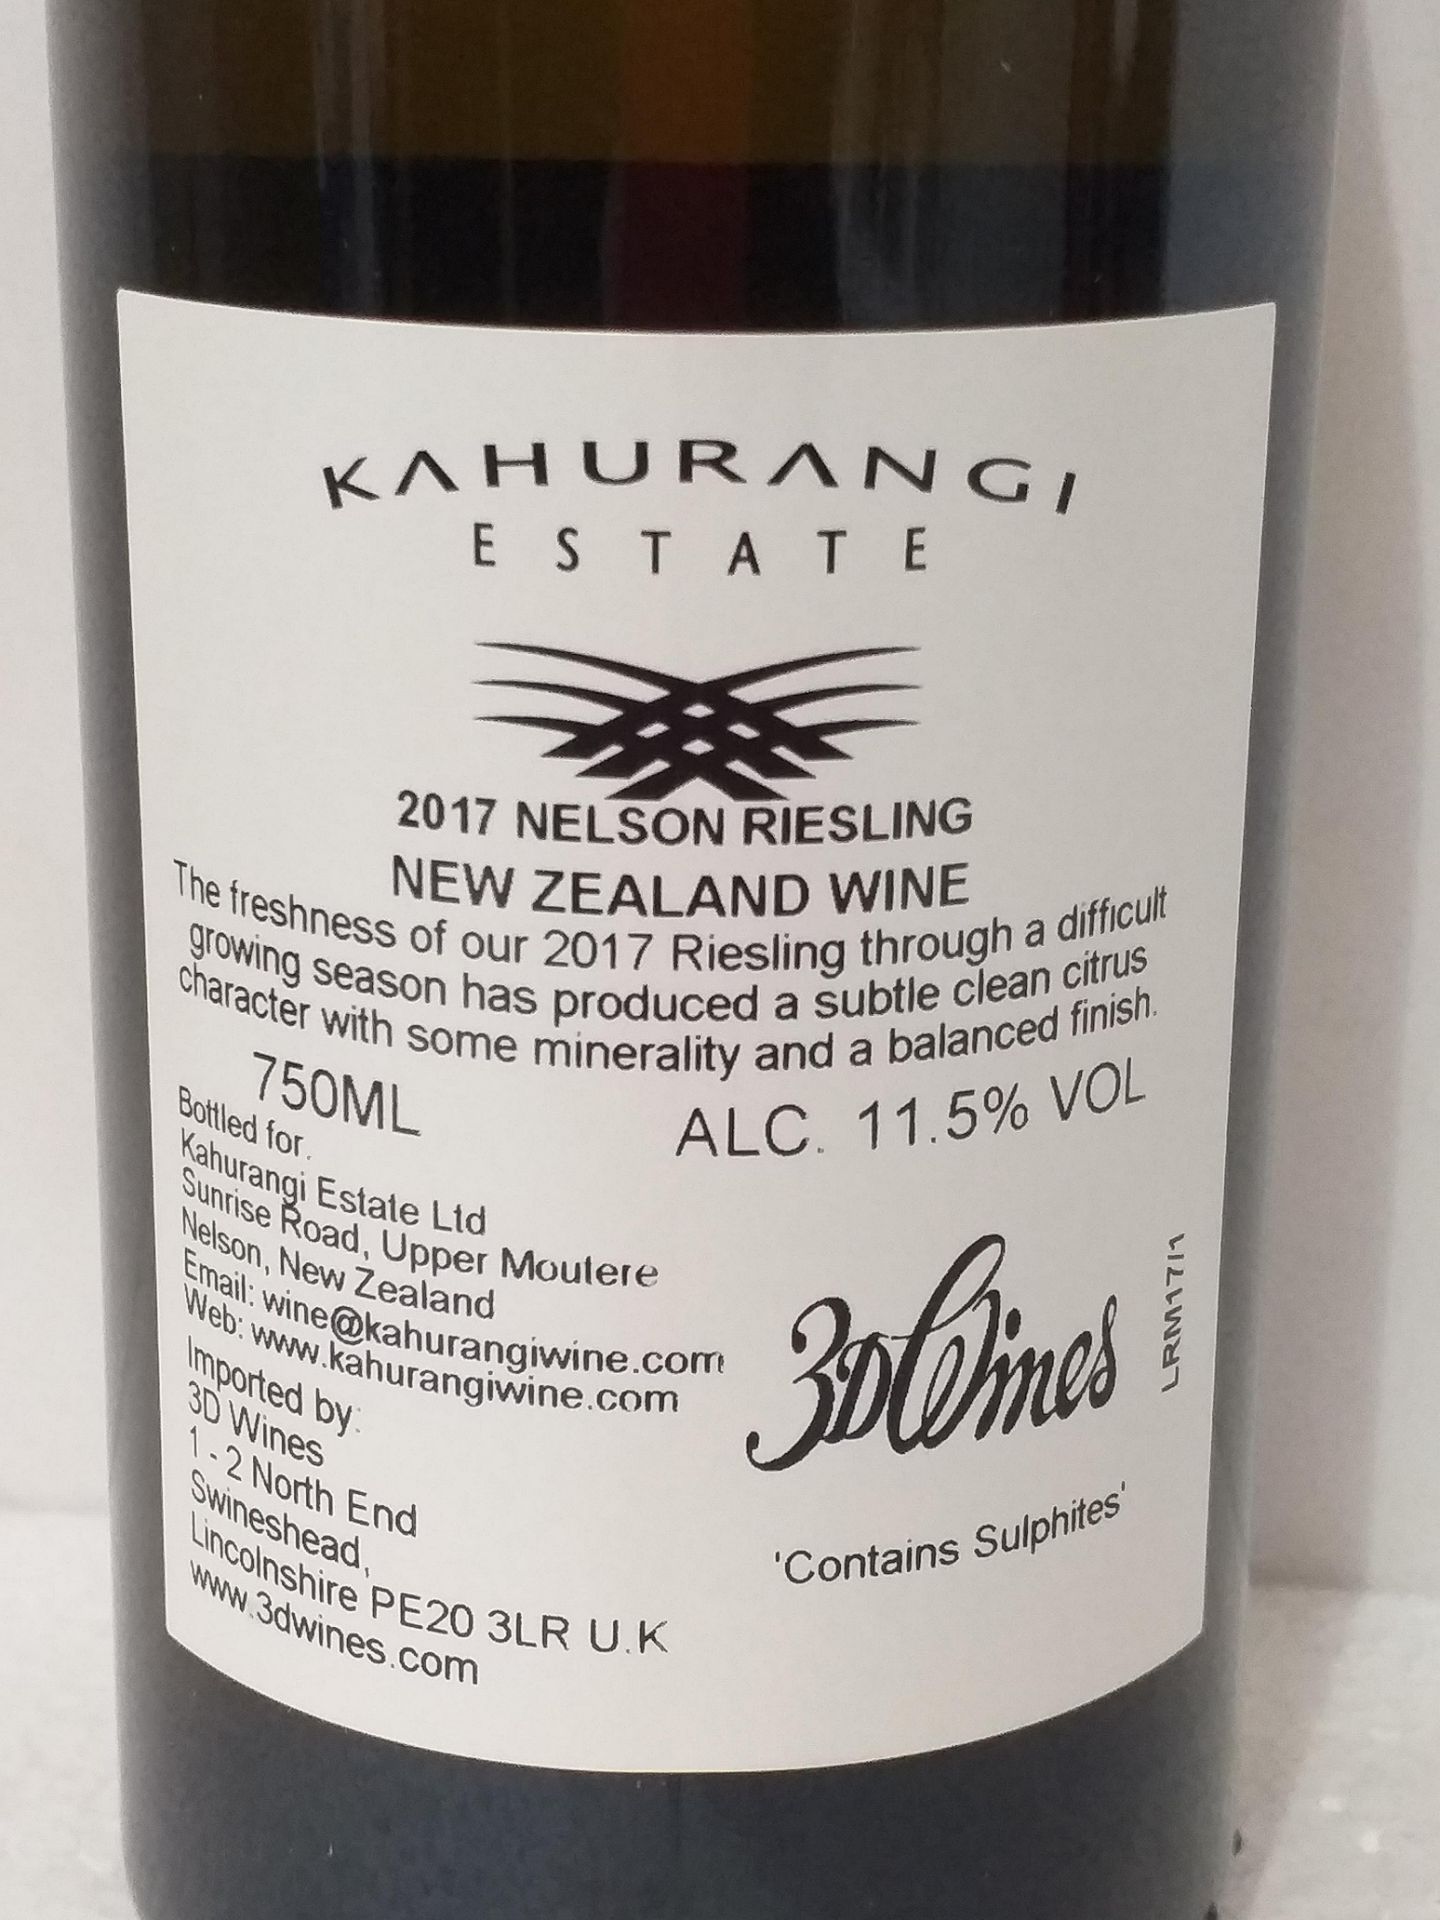 12 Bottles of Kahurangi Riesling 2017 - Image 3 of 3